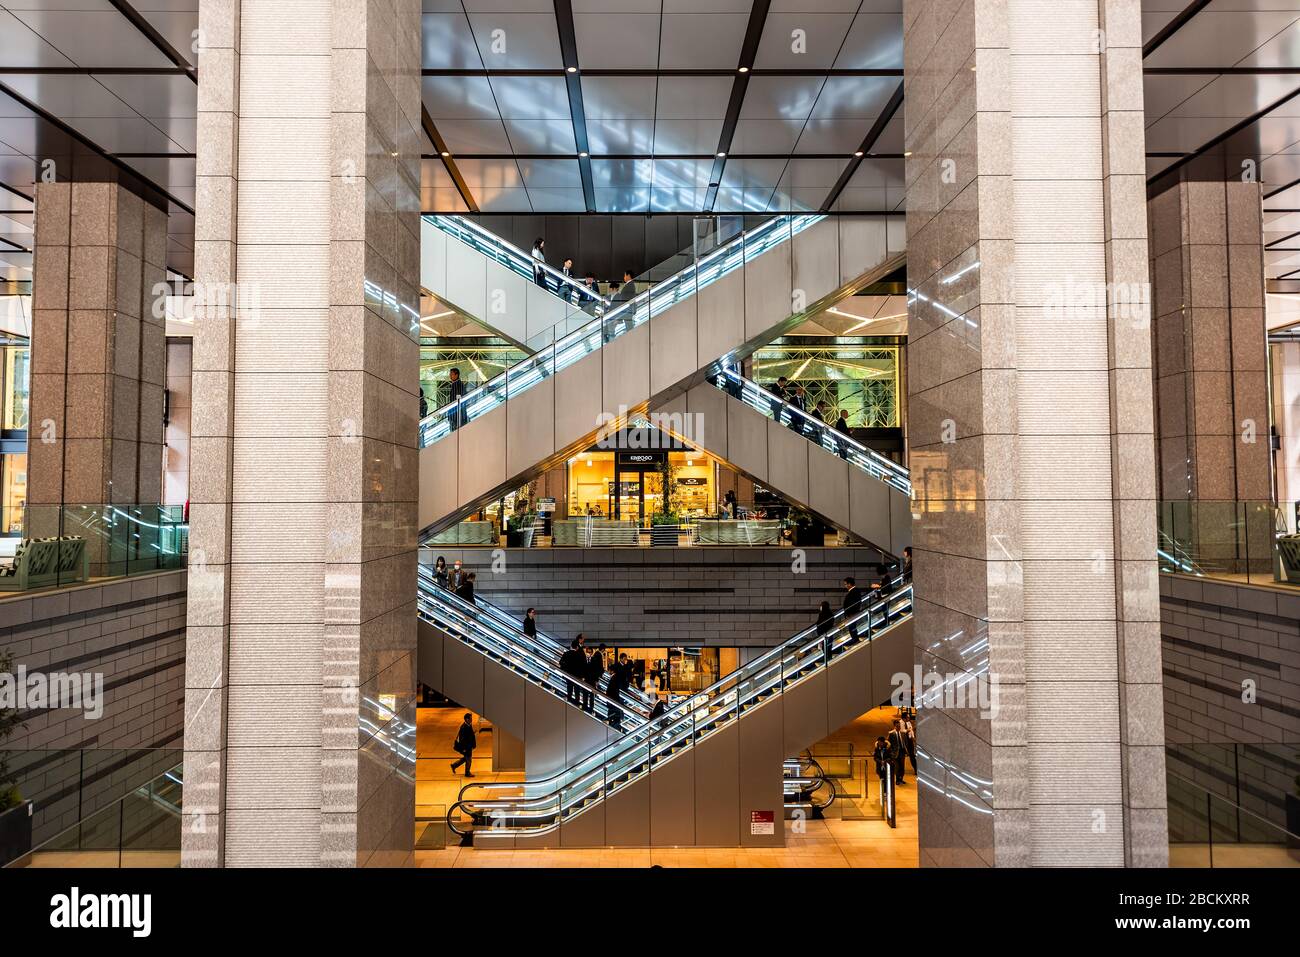 Tokyo, Giappone - 1 aprile 2019: Kyobashi Edopuland moderno centro affari edificio con architettura futuristica entrata di scale e scale mobili w Foto Stock